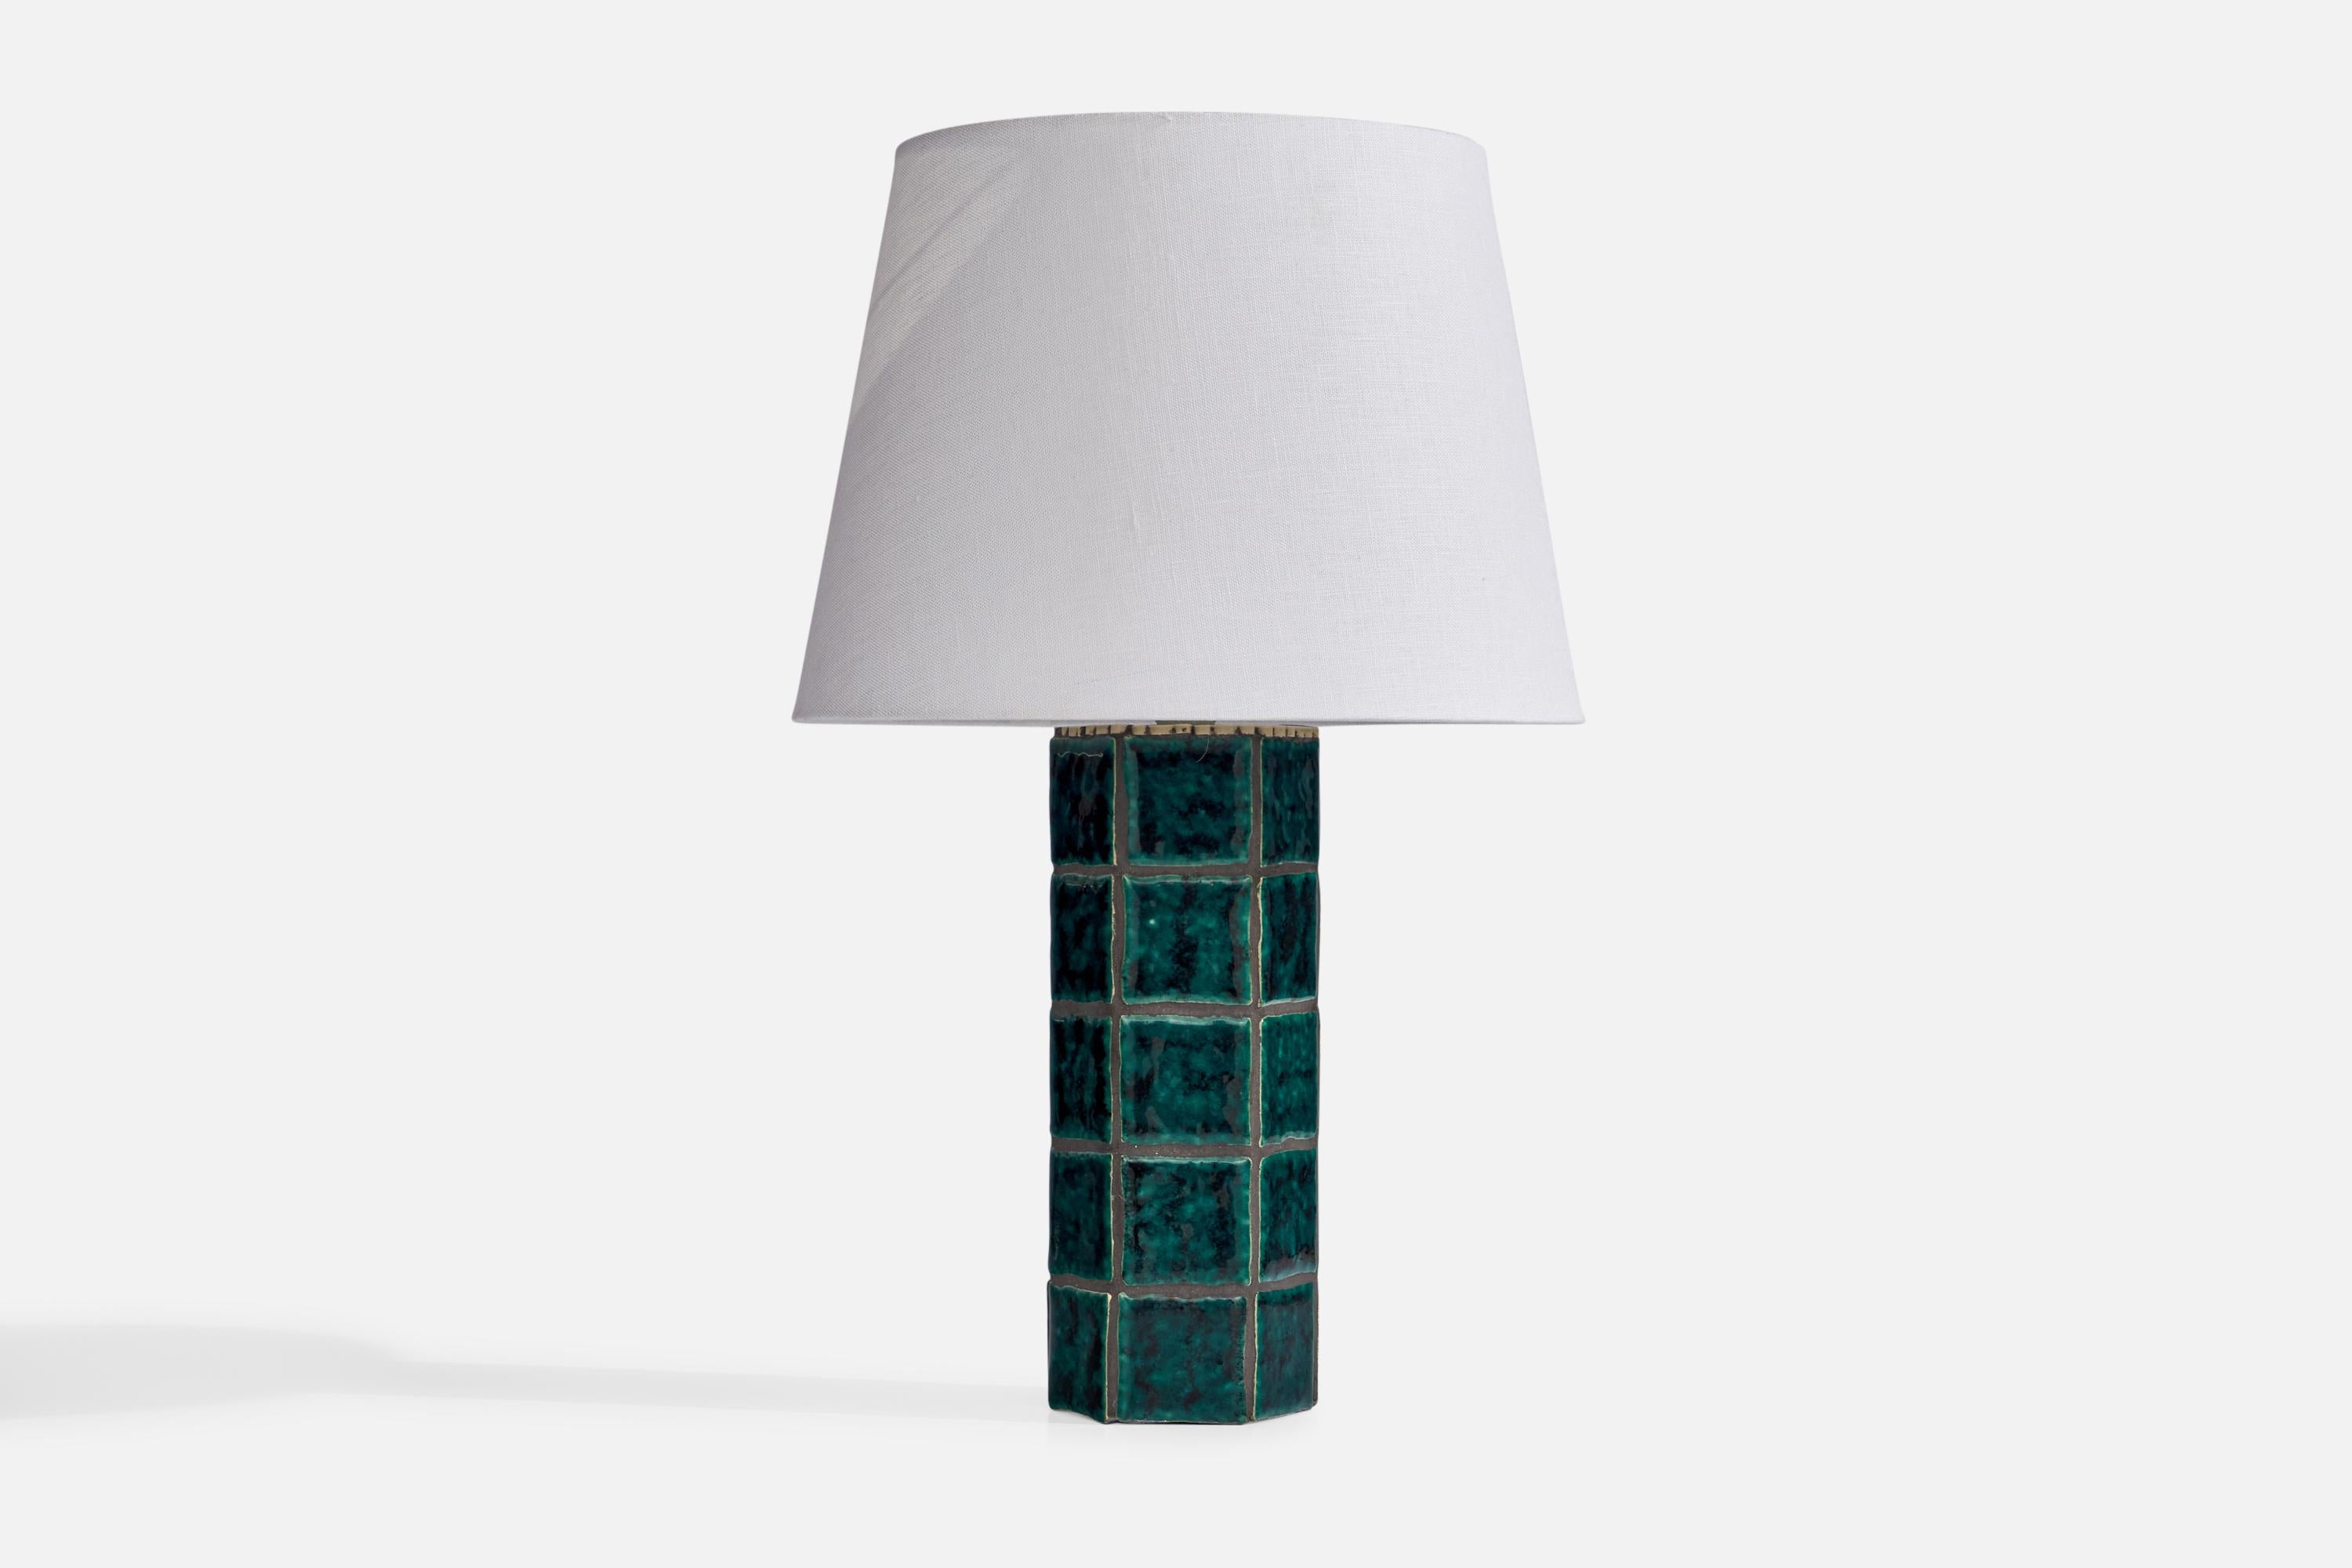 Lampe de table en carreaux de céramique bleu-vert, conçue et produite en Suède, années 1970.

Dimensions de la lampe (pouces) : 13.5